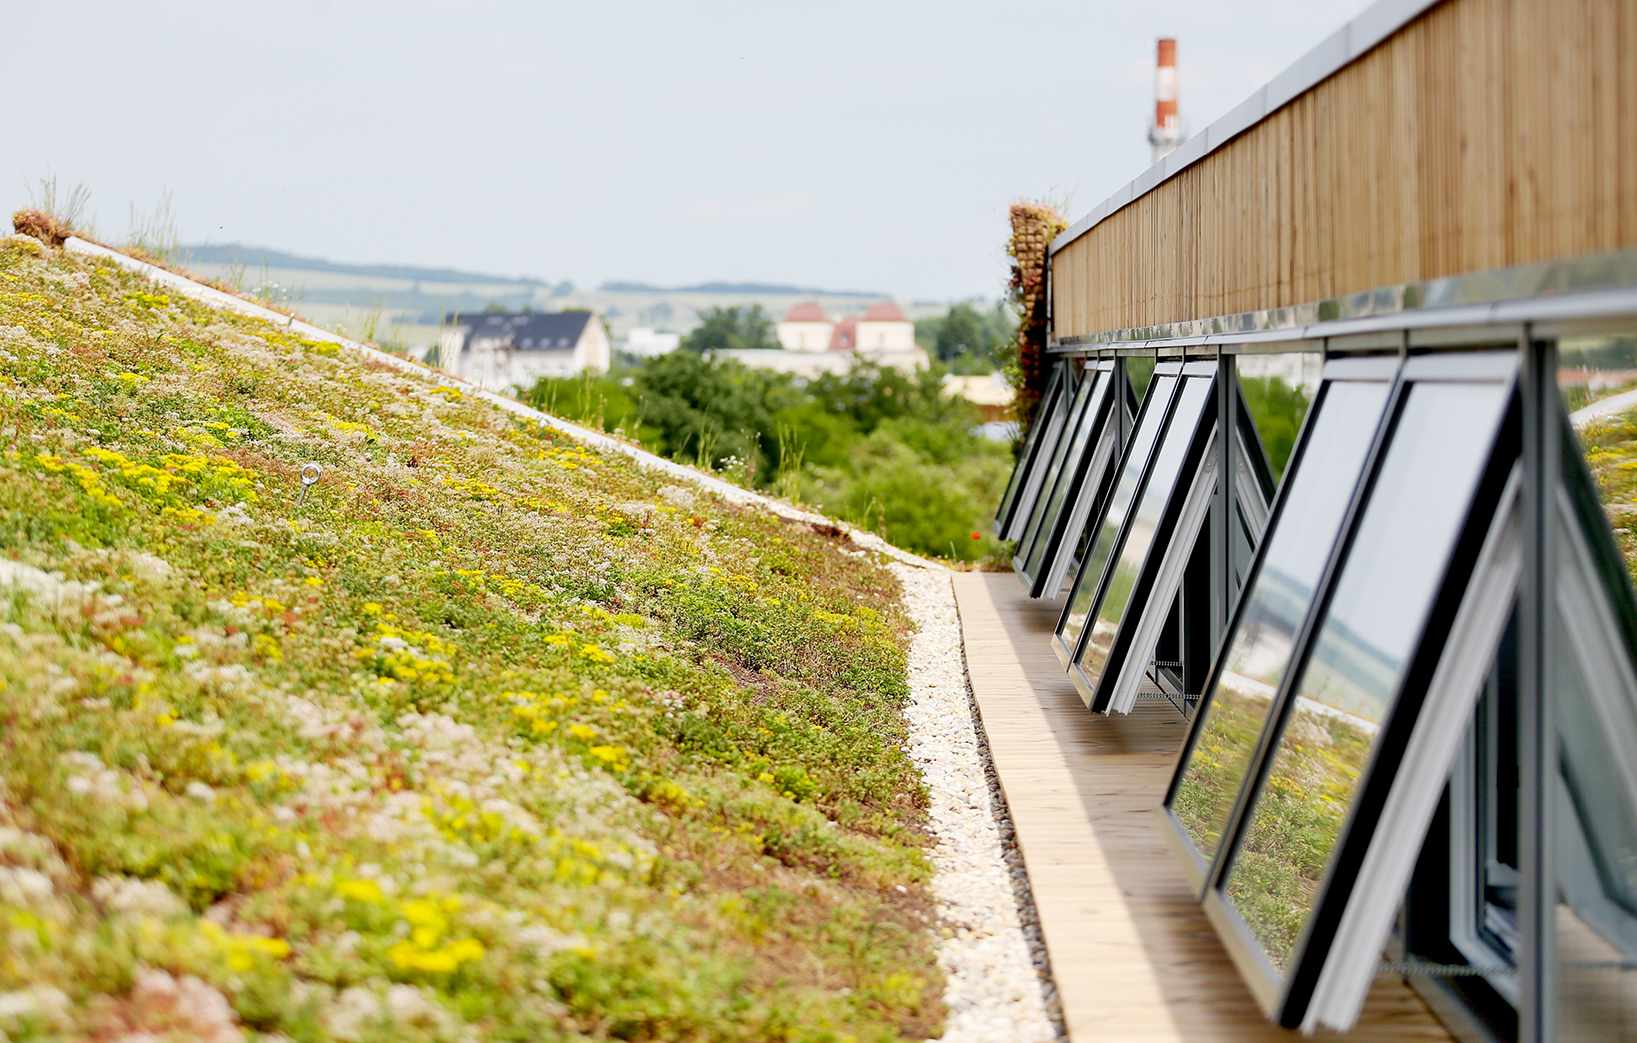 Výrobní hala využívá zelené fasády i střechy, které snižují teplotu v interiéru i ve svém okolí.